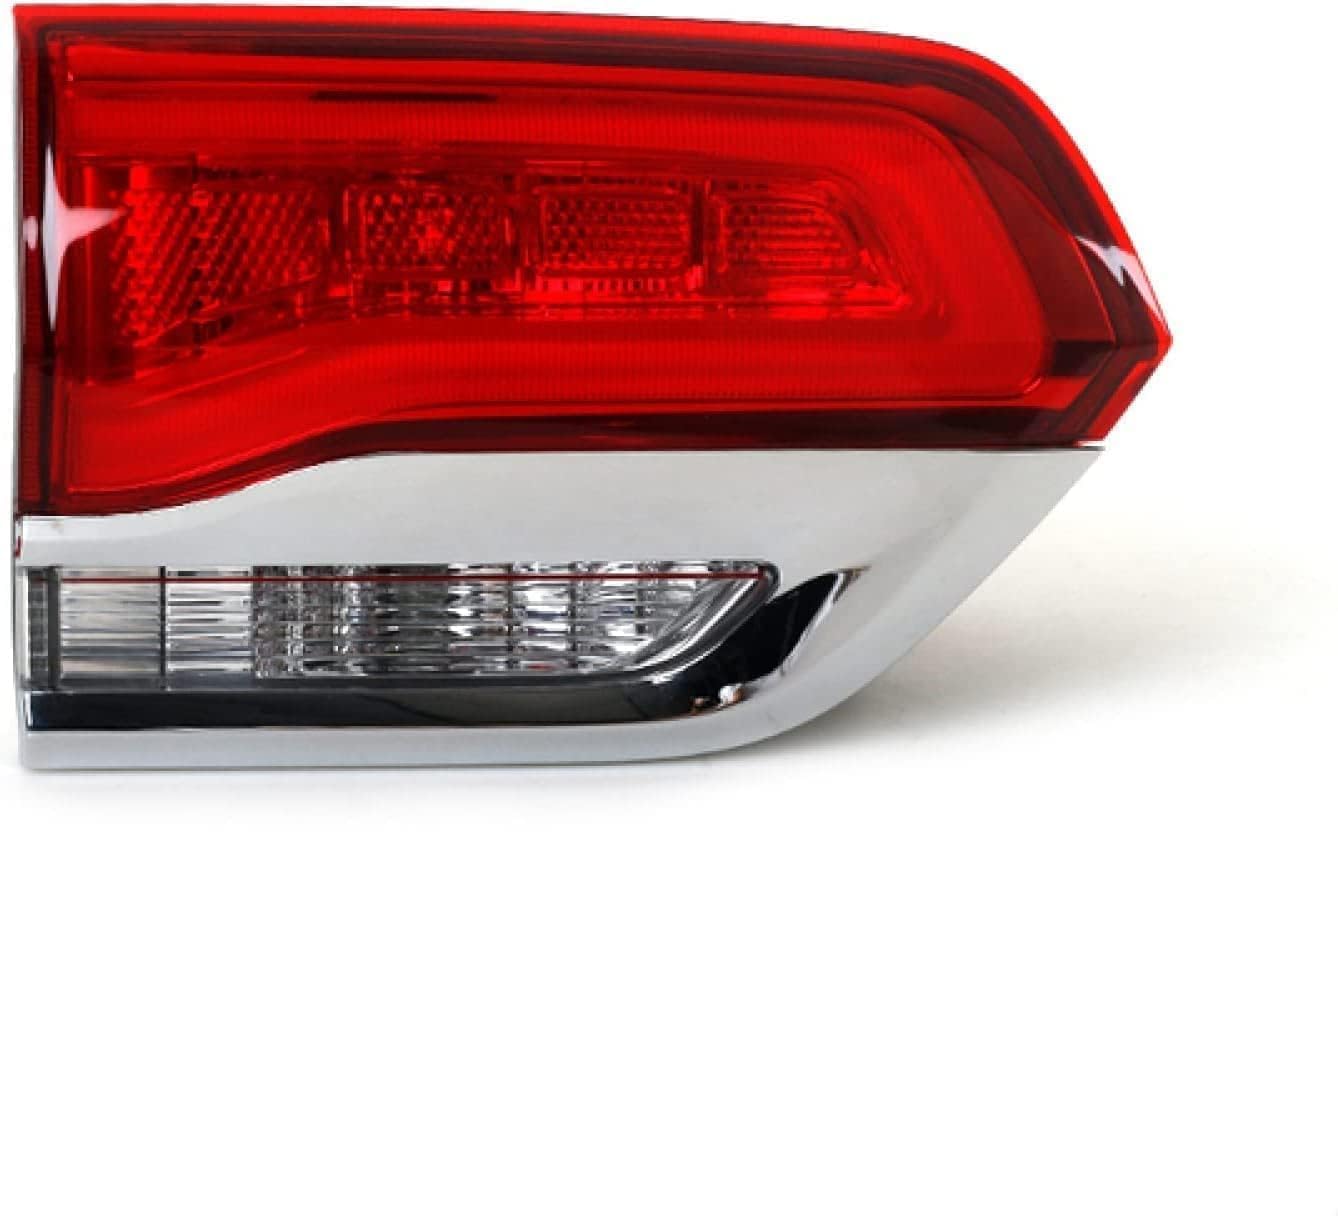 SibblE Auto Rücklicht Für Jeep Grand Cherokee 2014-2016, Rückfahr Nebelscheinwerfer Heckbremse Lampe Blinker Zubehör,Inside-left von SibblE